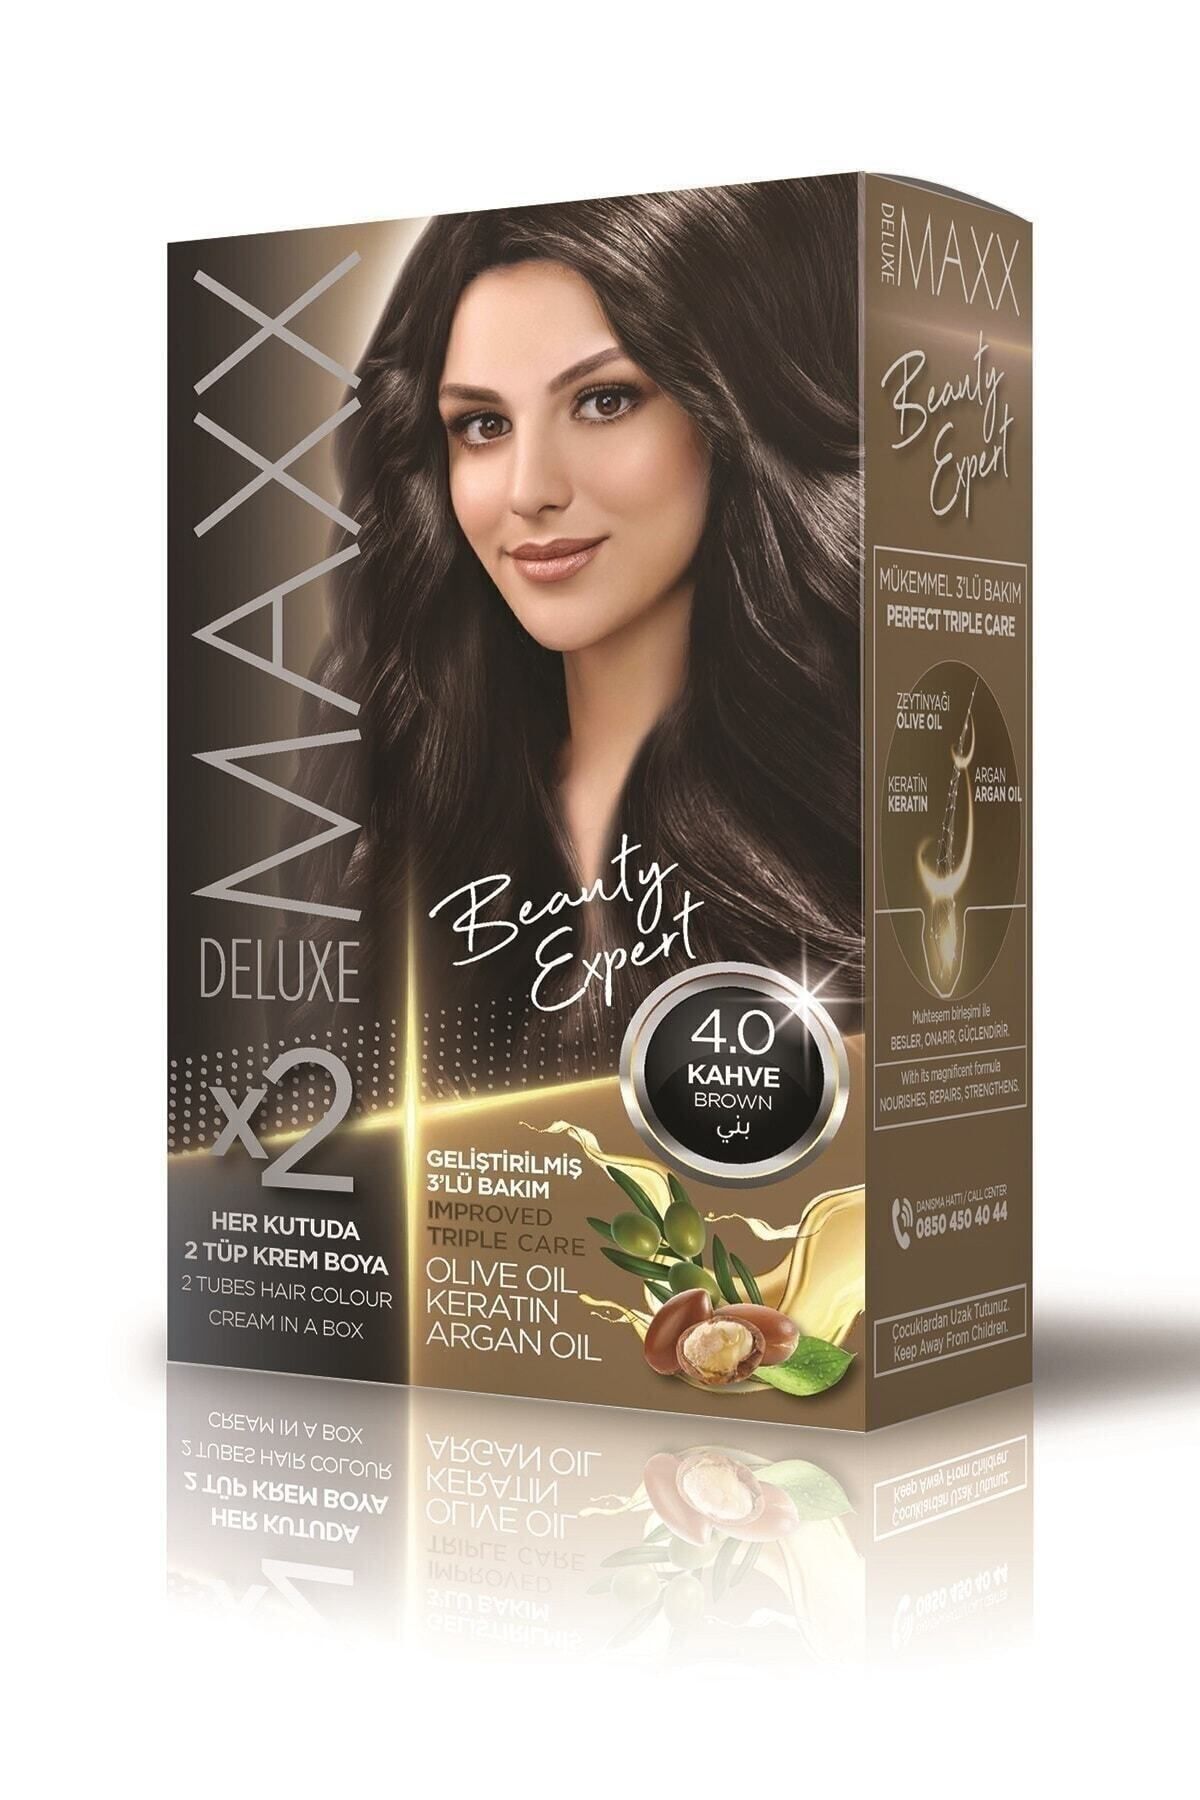 MAXX DELUXE Beauty Expert 4.0 Kahve Set Boya